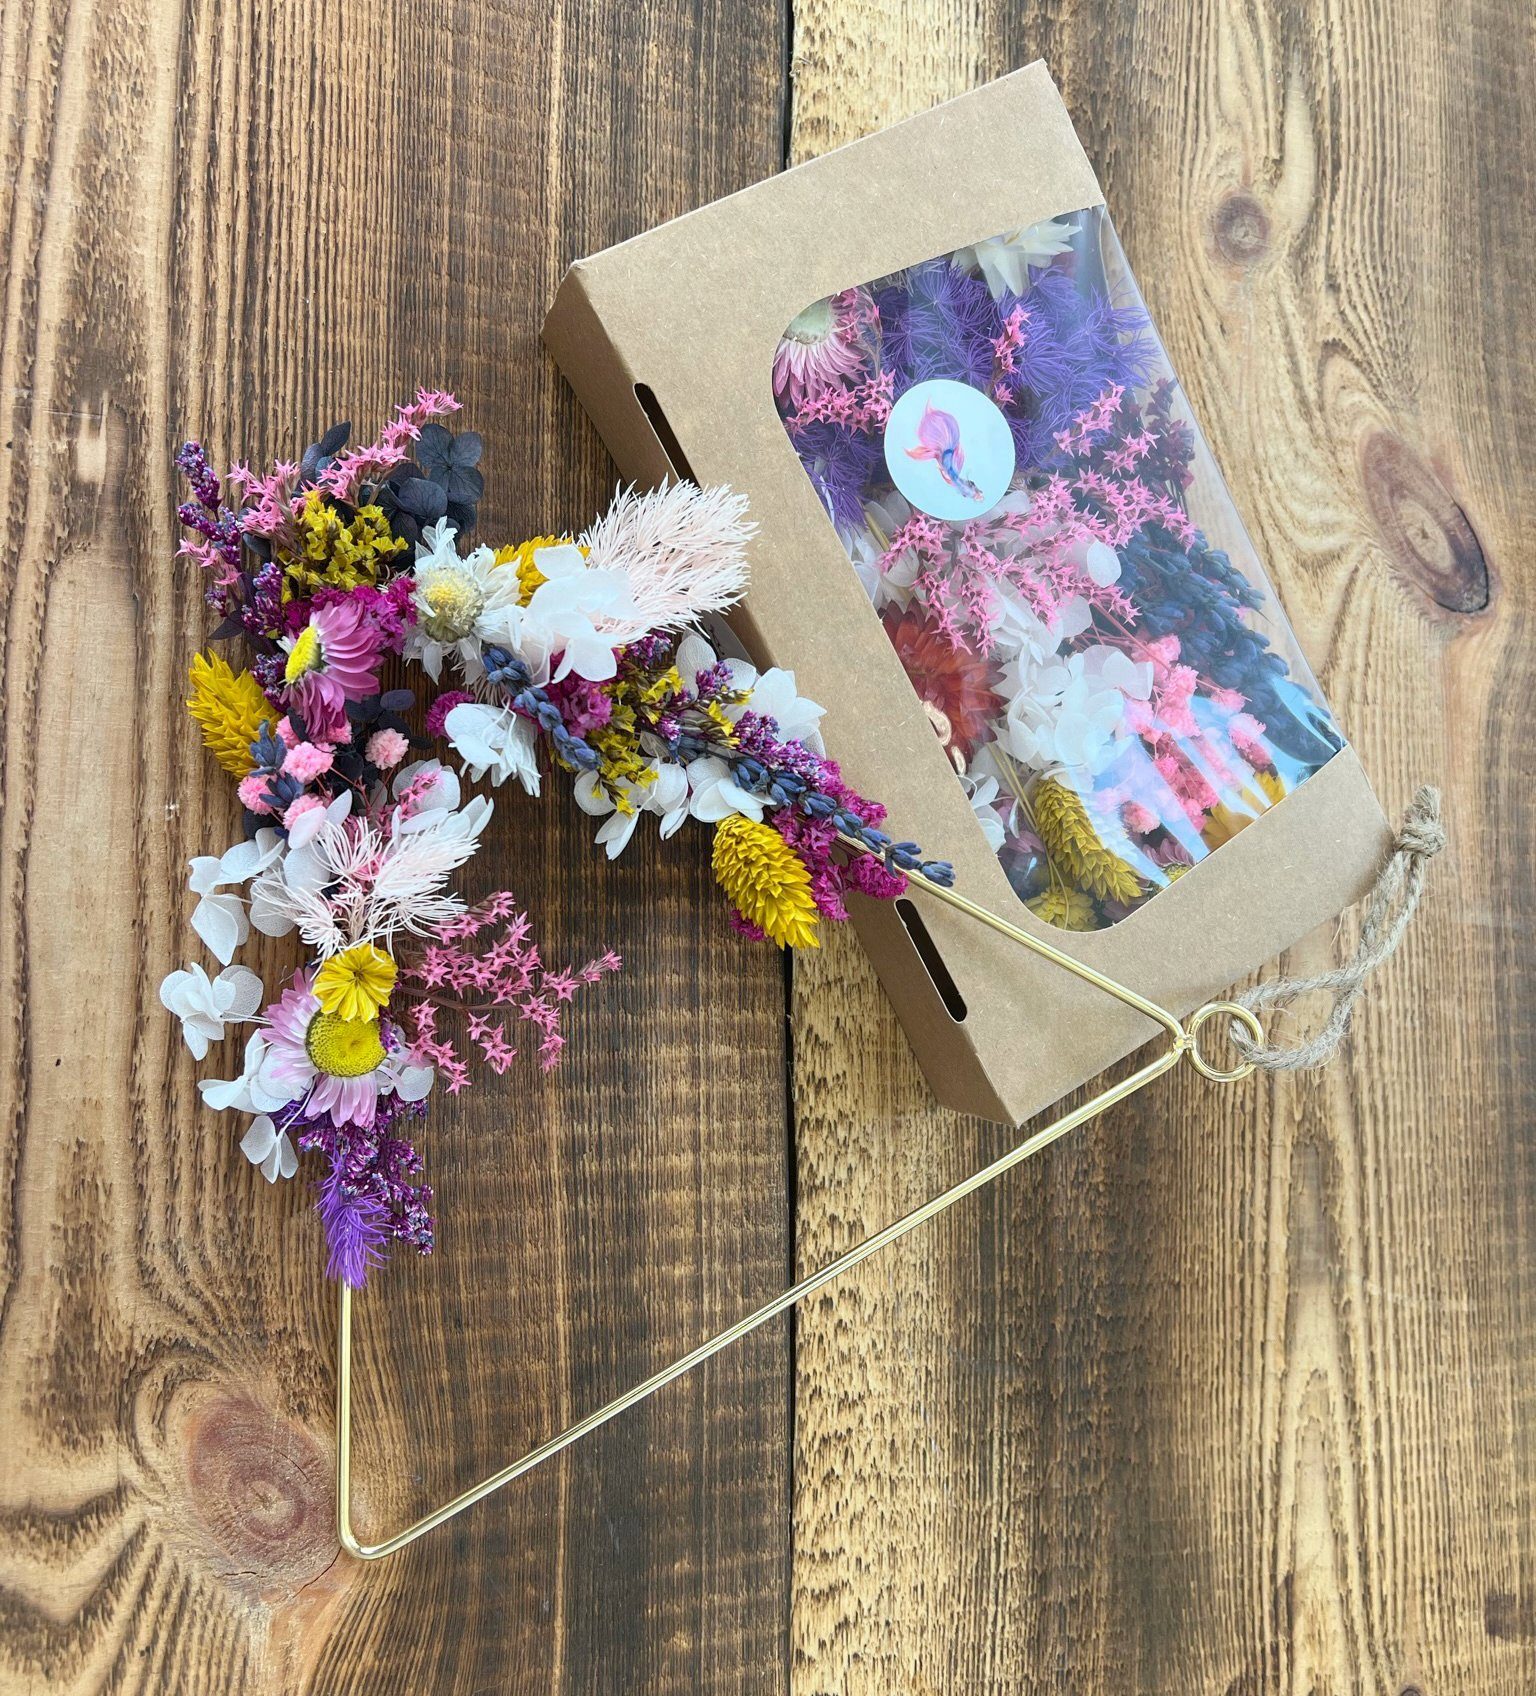 Trockenblume Getrocknete Blüten Töne, - Kunstharz.Art Pinke Farben in frohen